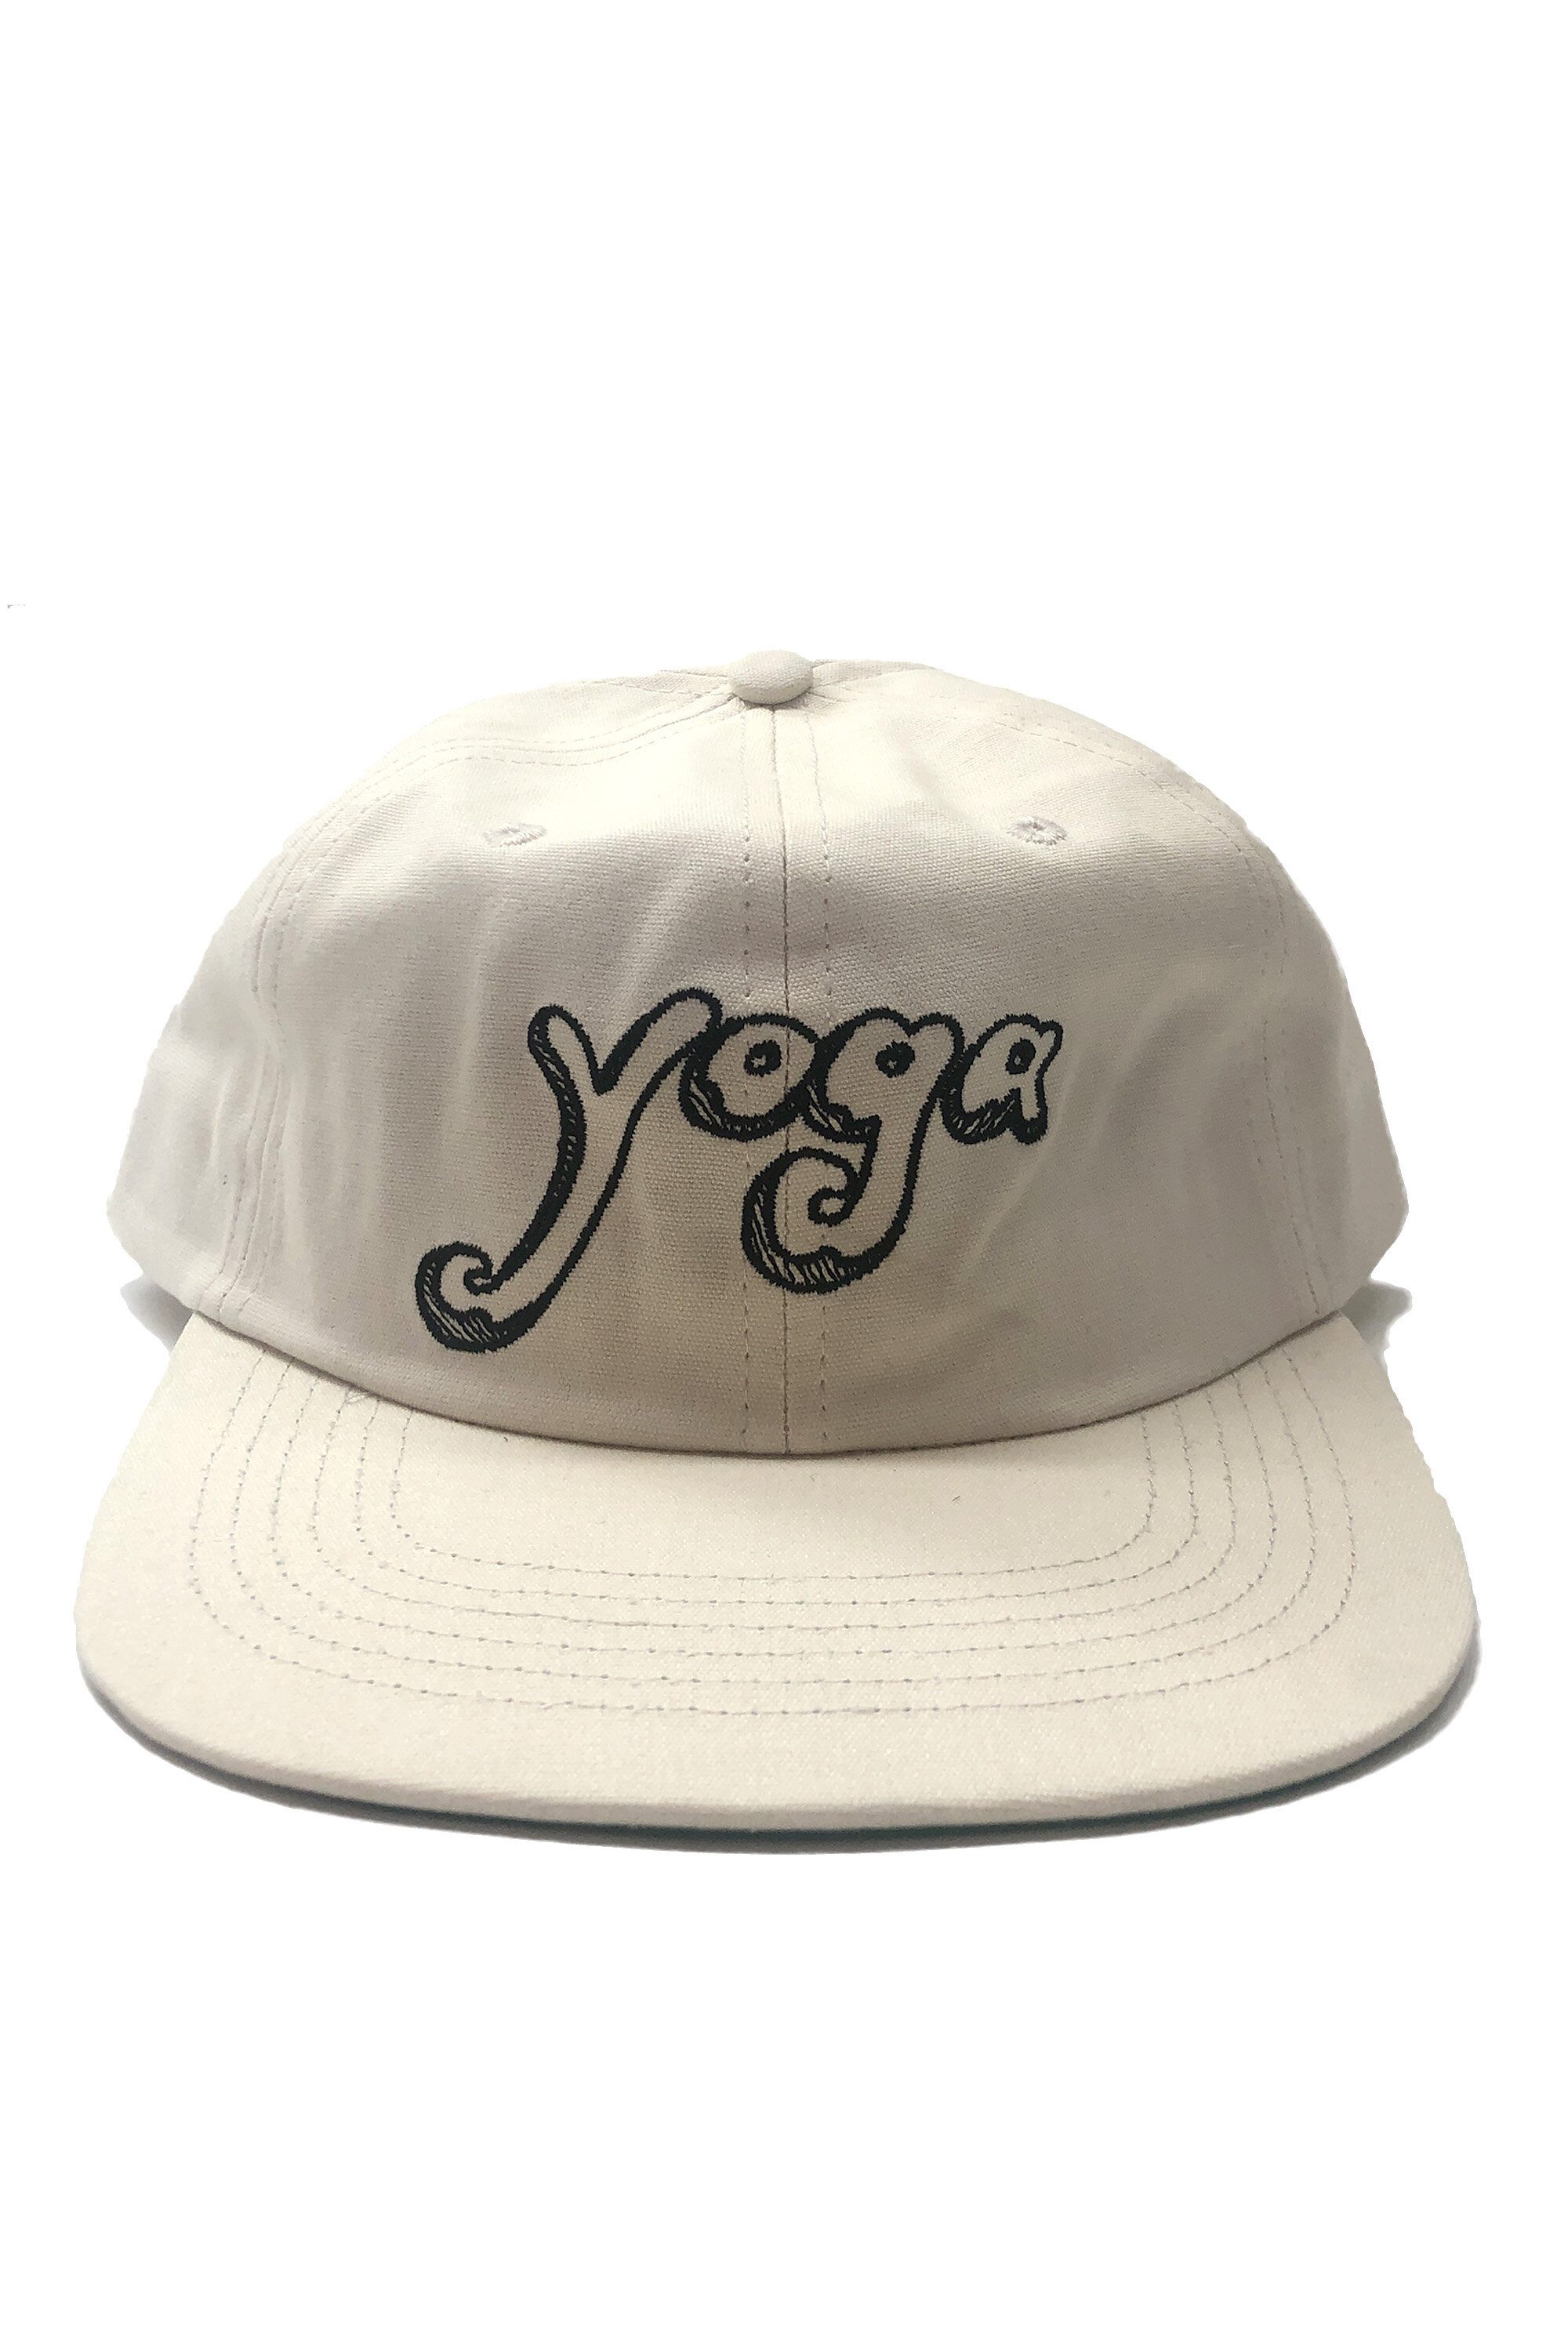 yoga cap